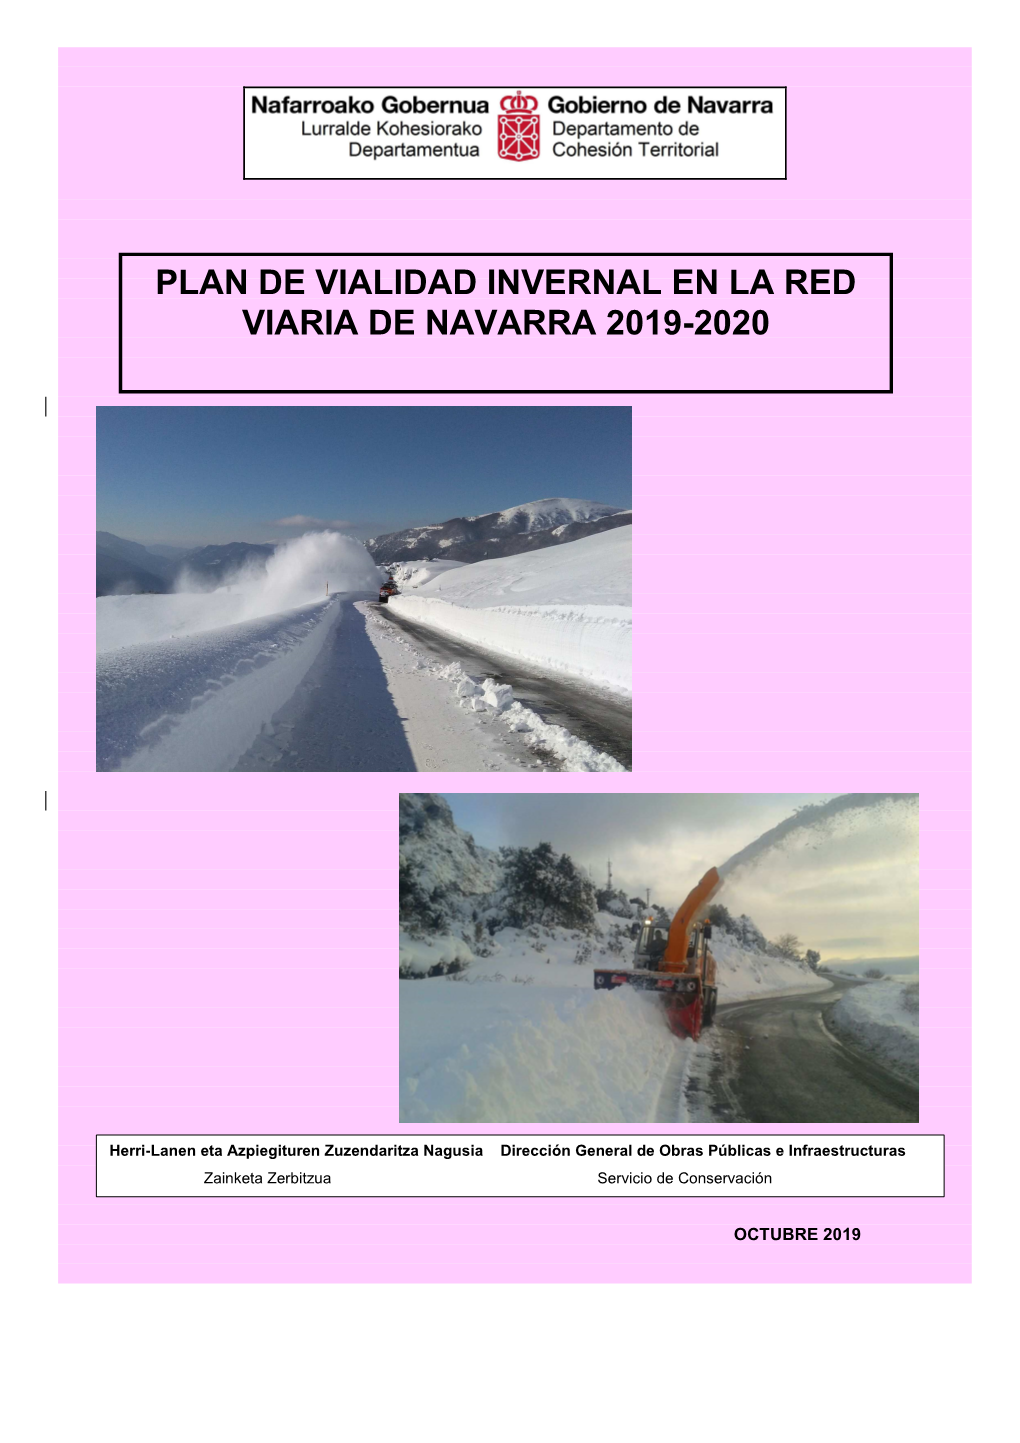 Plan De Vialidad Invernal En La Red Viaria De Navarra 2019-2020